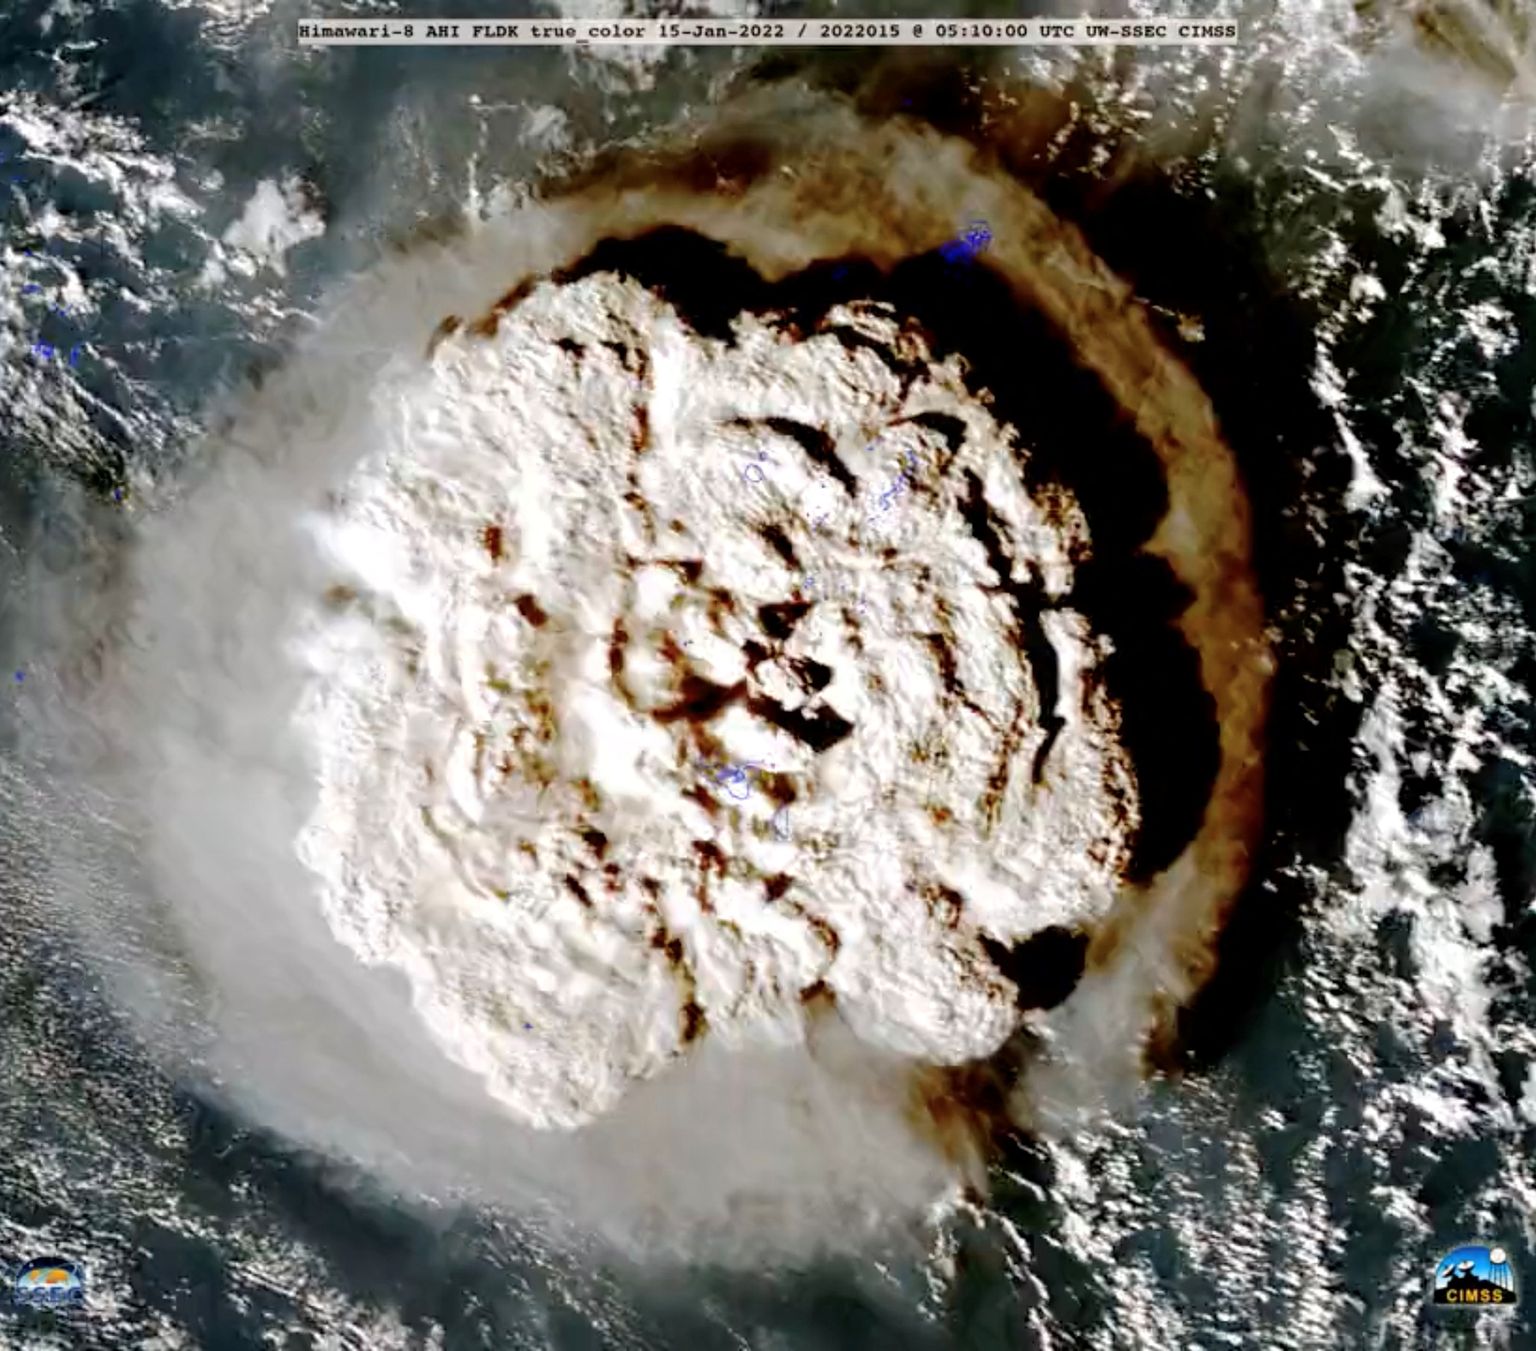 Jaapani ilmasatelliidi Himawari-8 pilt Tonga vulkaanist Hunga Tonga-Hunga Ha'apaist 15. jaanuaril, kui ta purskama hakkas